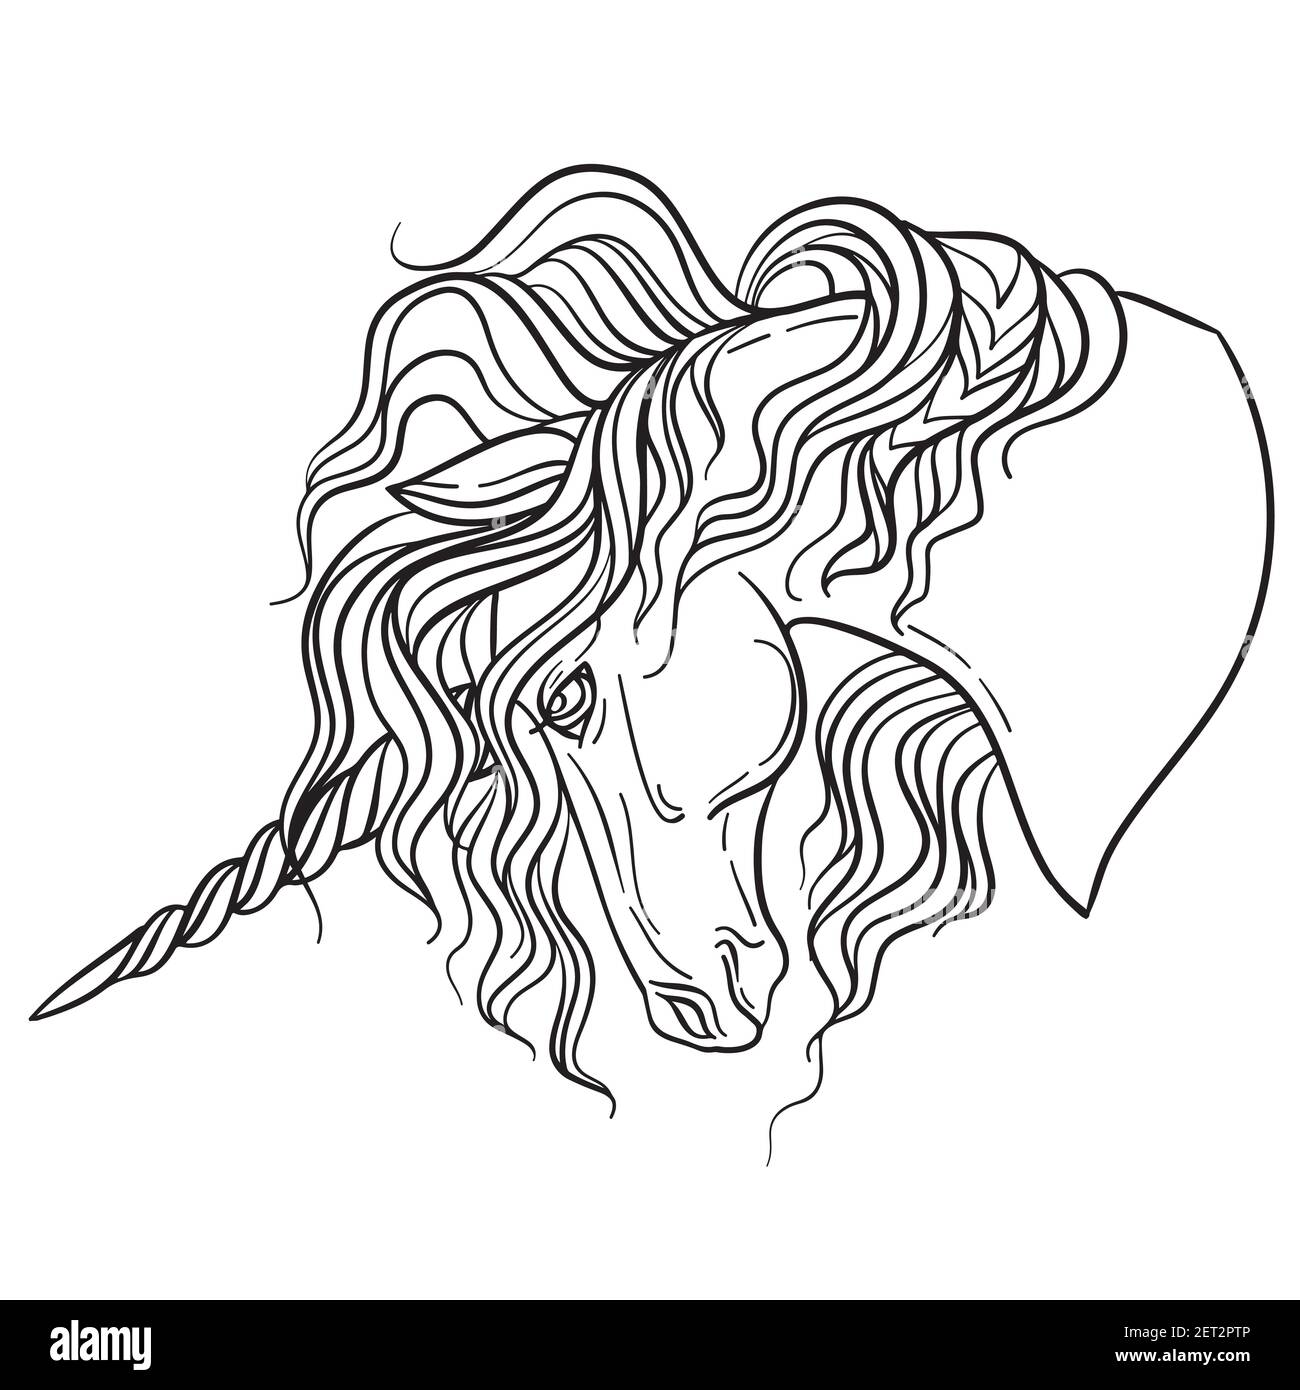 Schönes Profil des Einhorns mit einer langen Mähne. Vektor schwarz-weiß isolierte Kontur Illustration zum Ausmalen Buchseiten, Design, Drucke, poste Stock Vektor